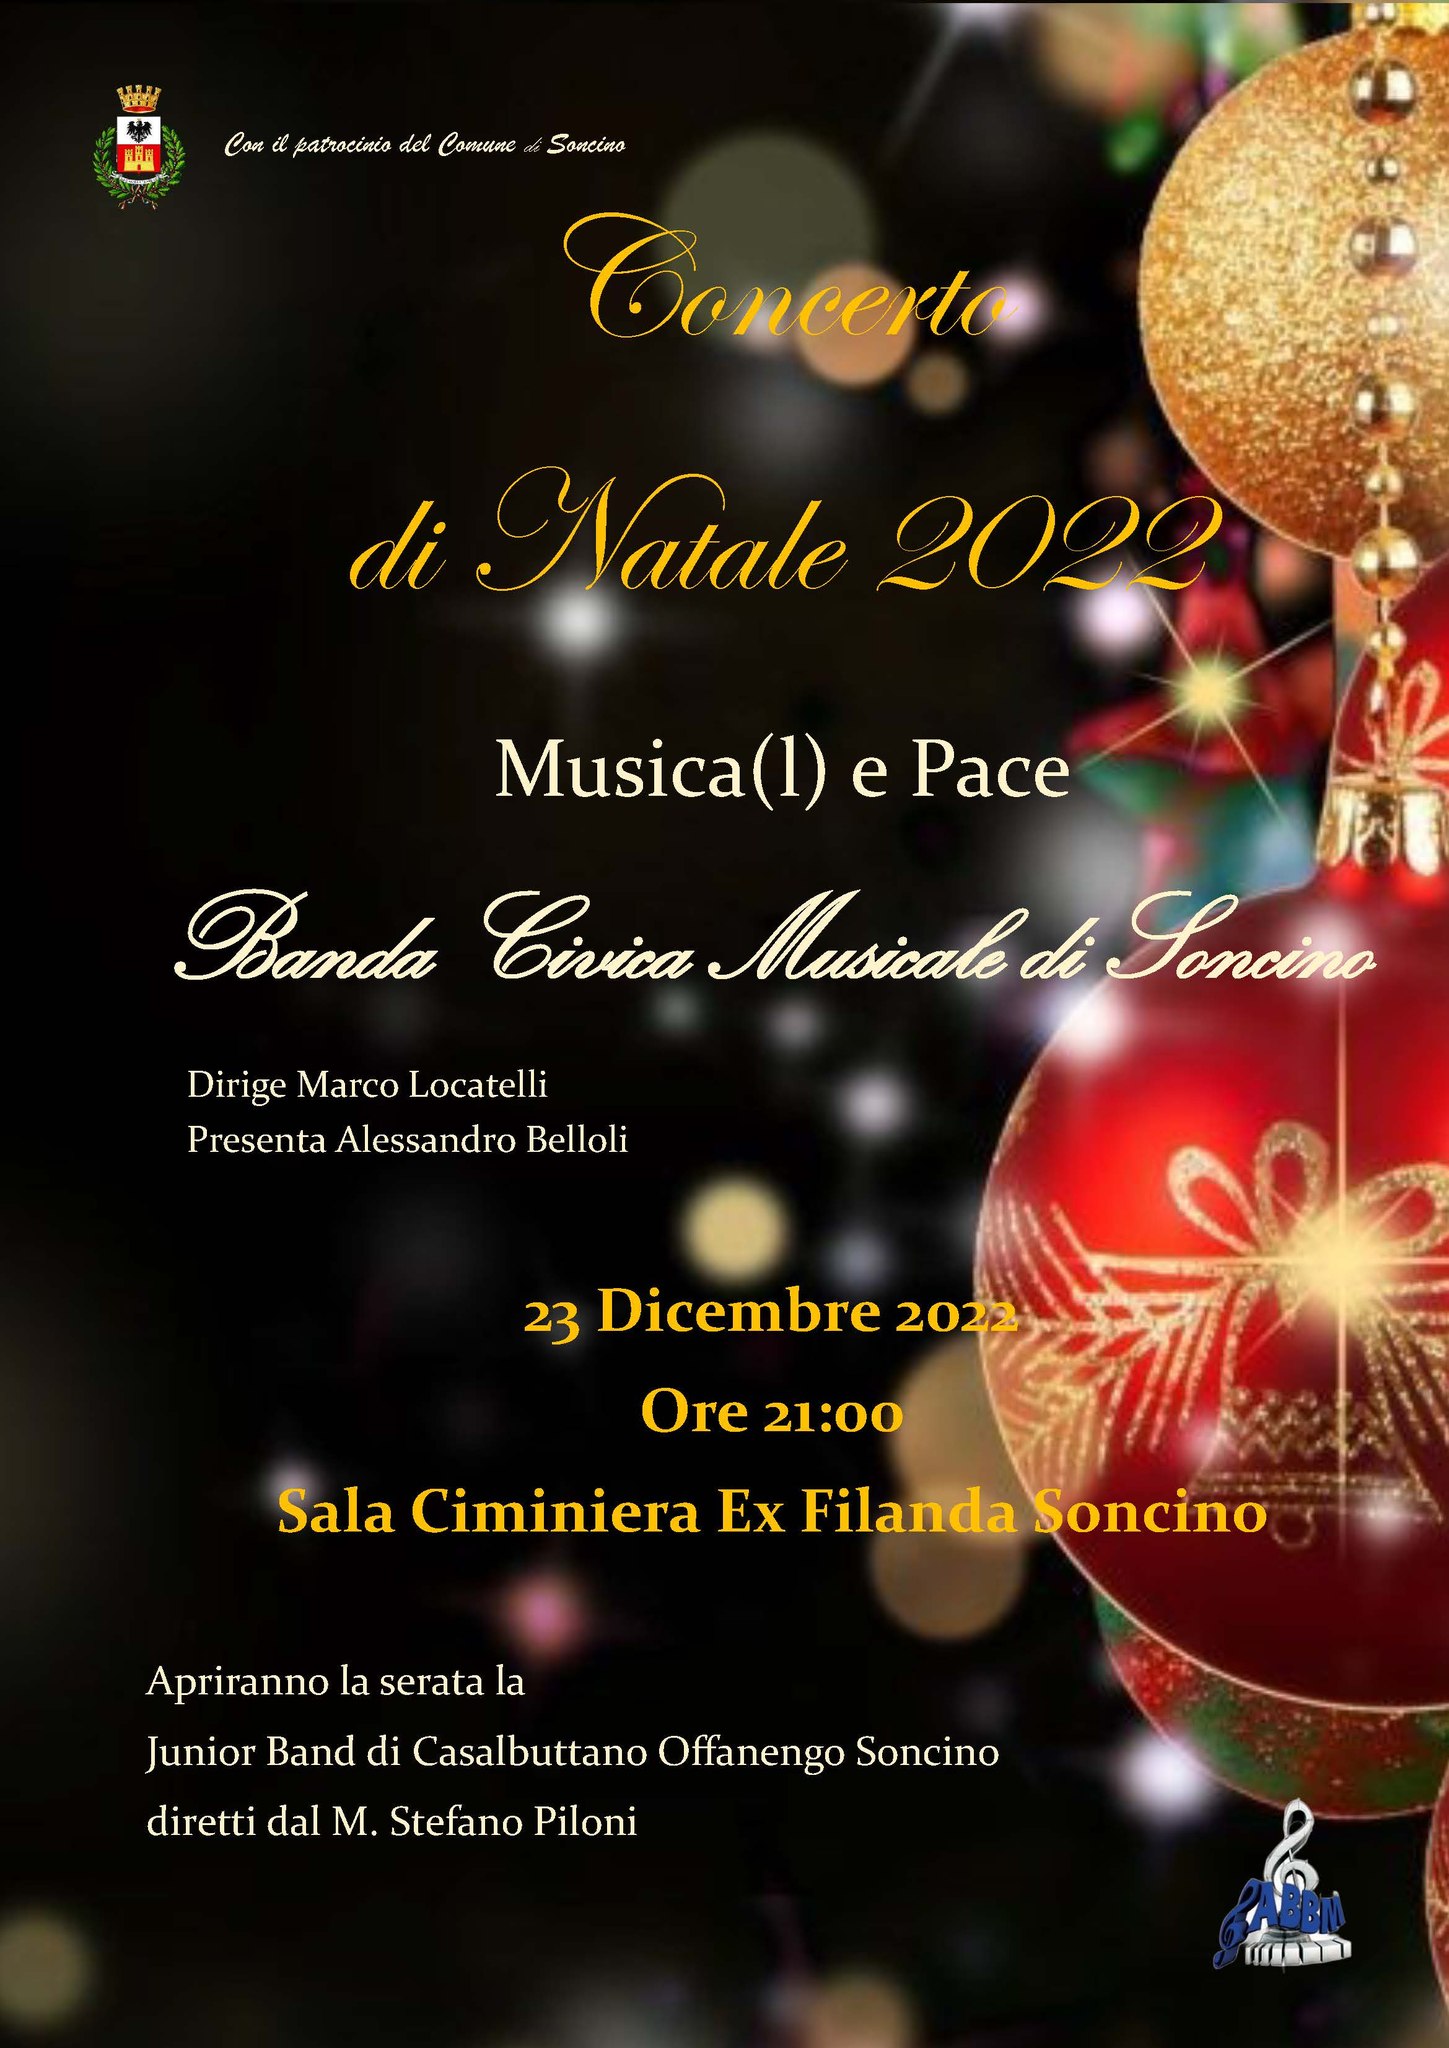 Il concerto della Banda Civica Musicale di Soncino il 23 dicembre alla Filanda